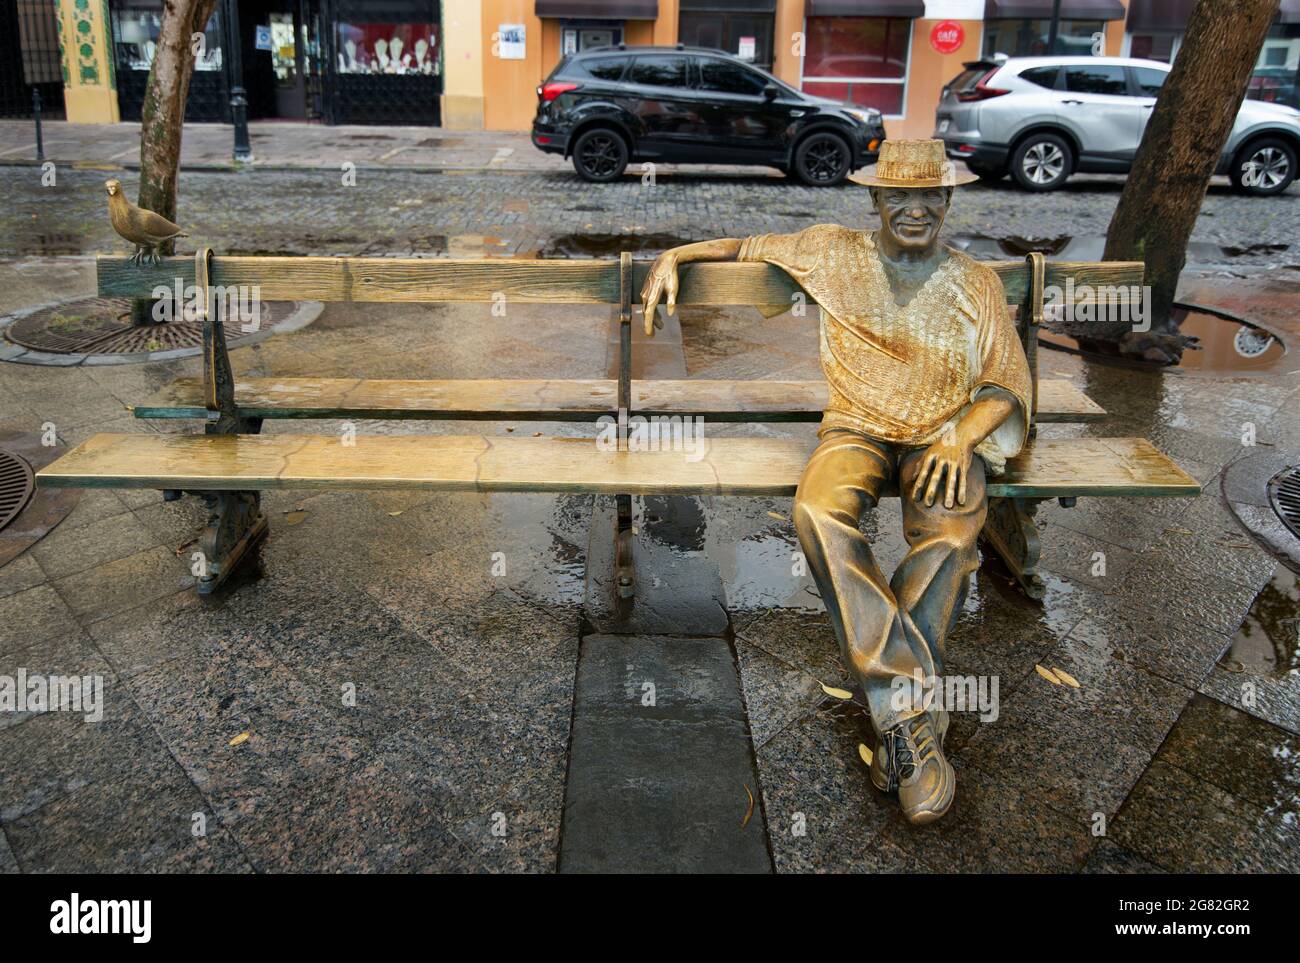 Statue du compositeur portoricain Tite Curet Alonso assis sur un banc sur la Plaza de Armas, Old San Juan, Puerto Rico, Etats-Unis. La statue de Luz Badillo. Banque D'Images